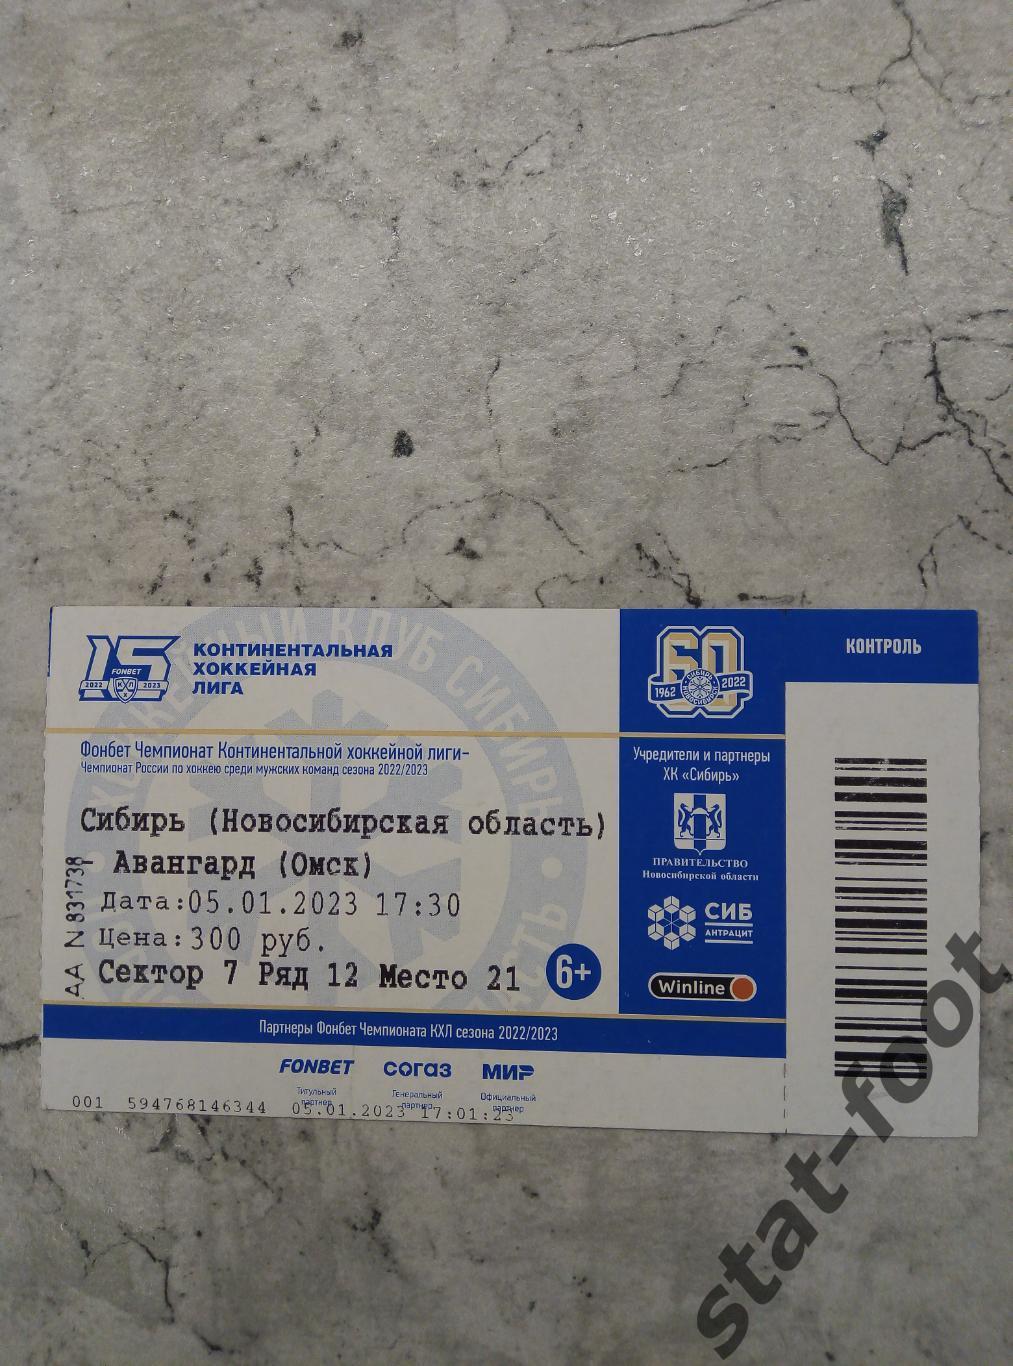 Сибирь Новосибирск - Авангард Омск 05.01. 2023 билет хоккей.